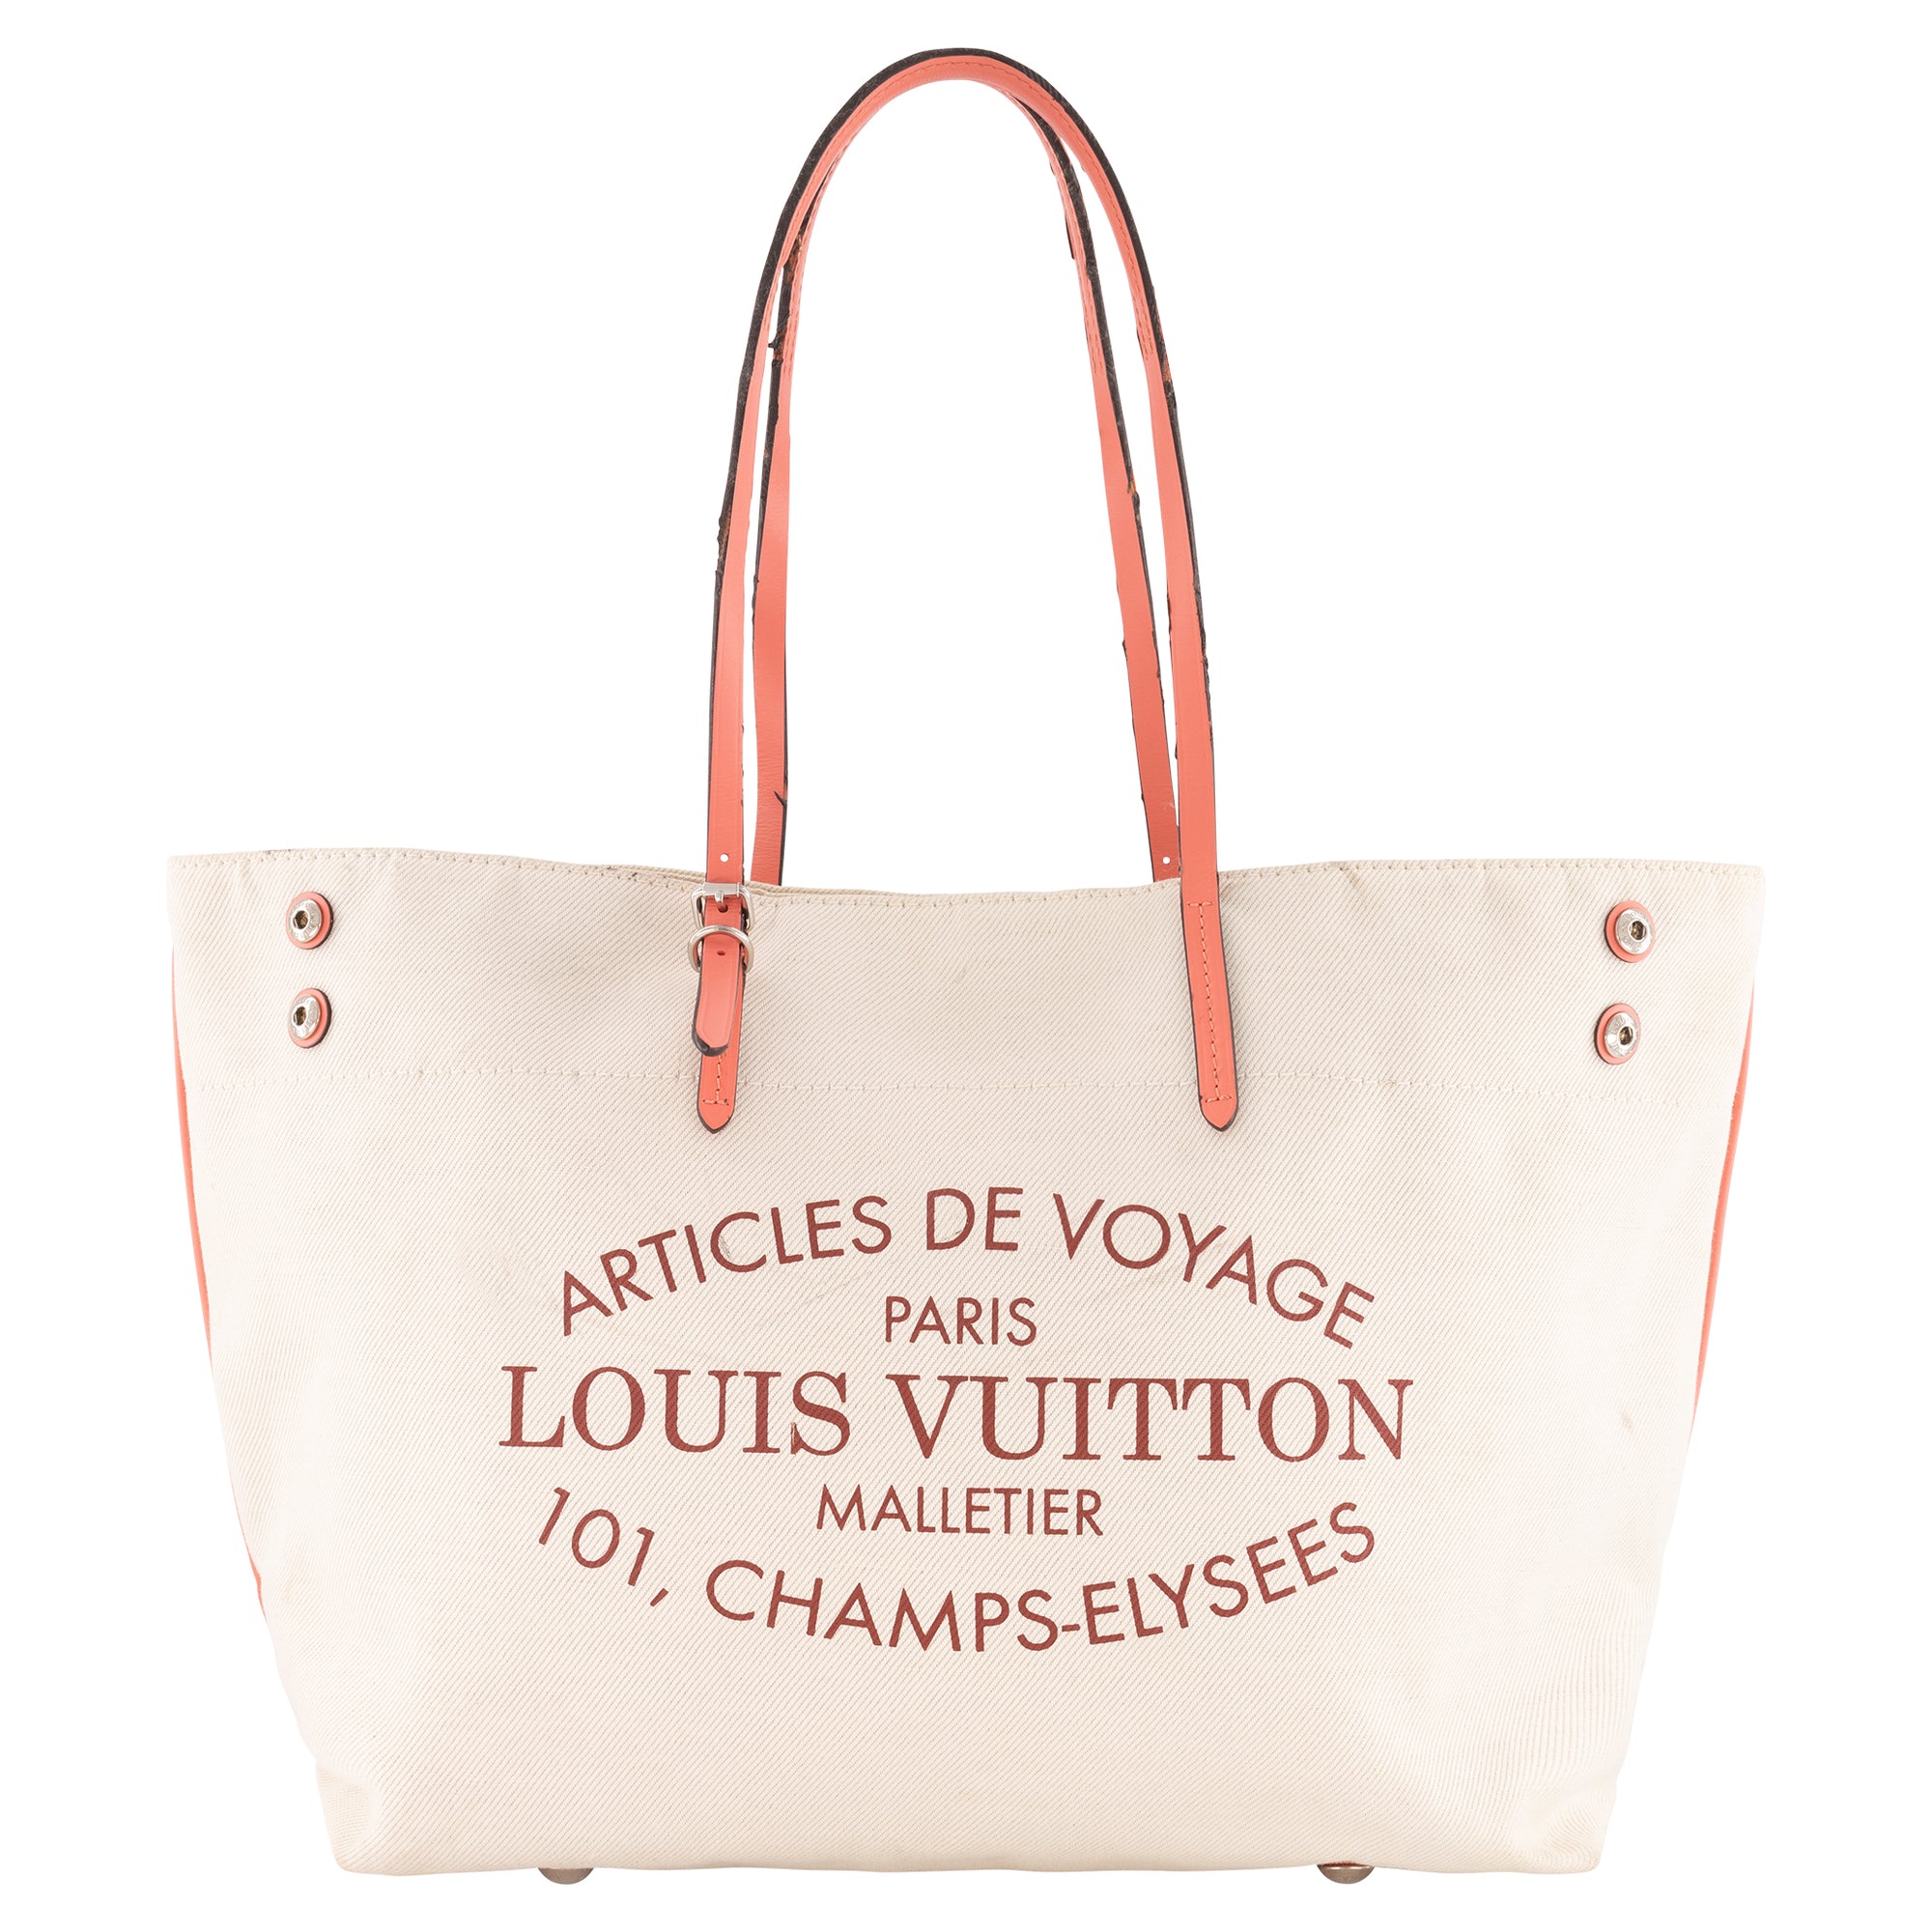 Louis Vuitton Limited Edition White Canvas Capri Articles De